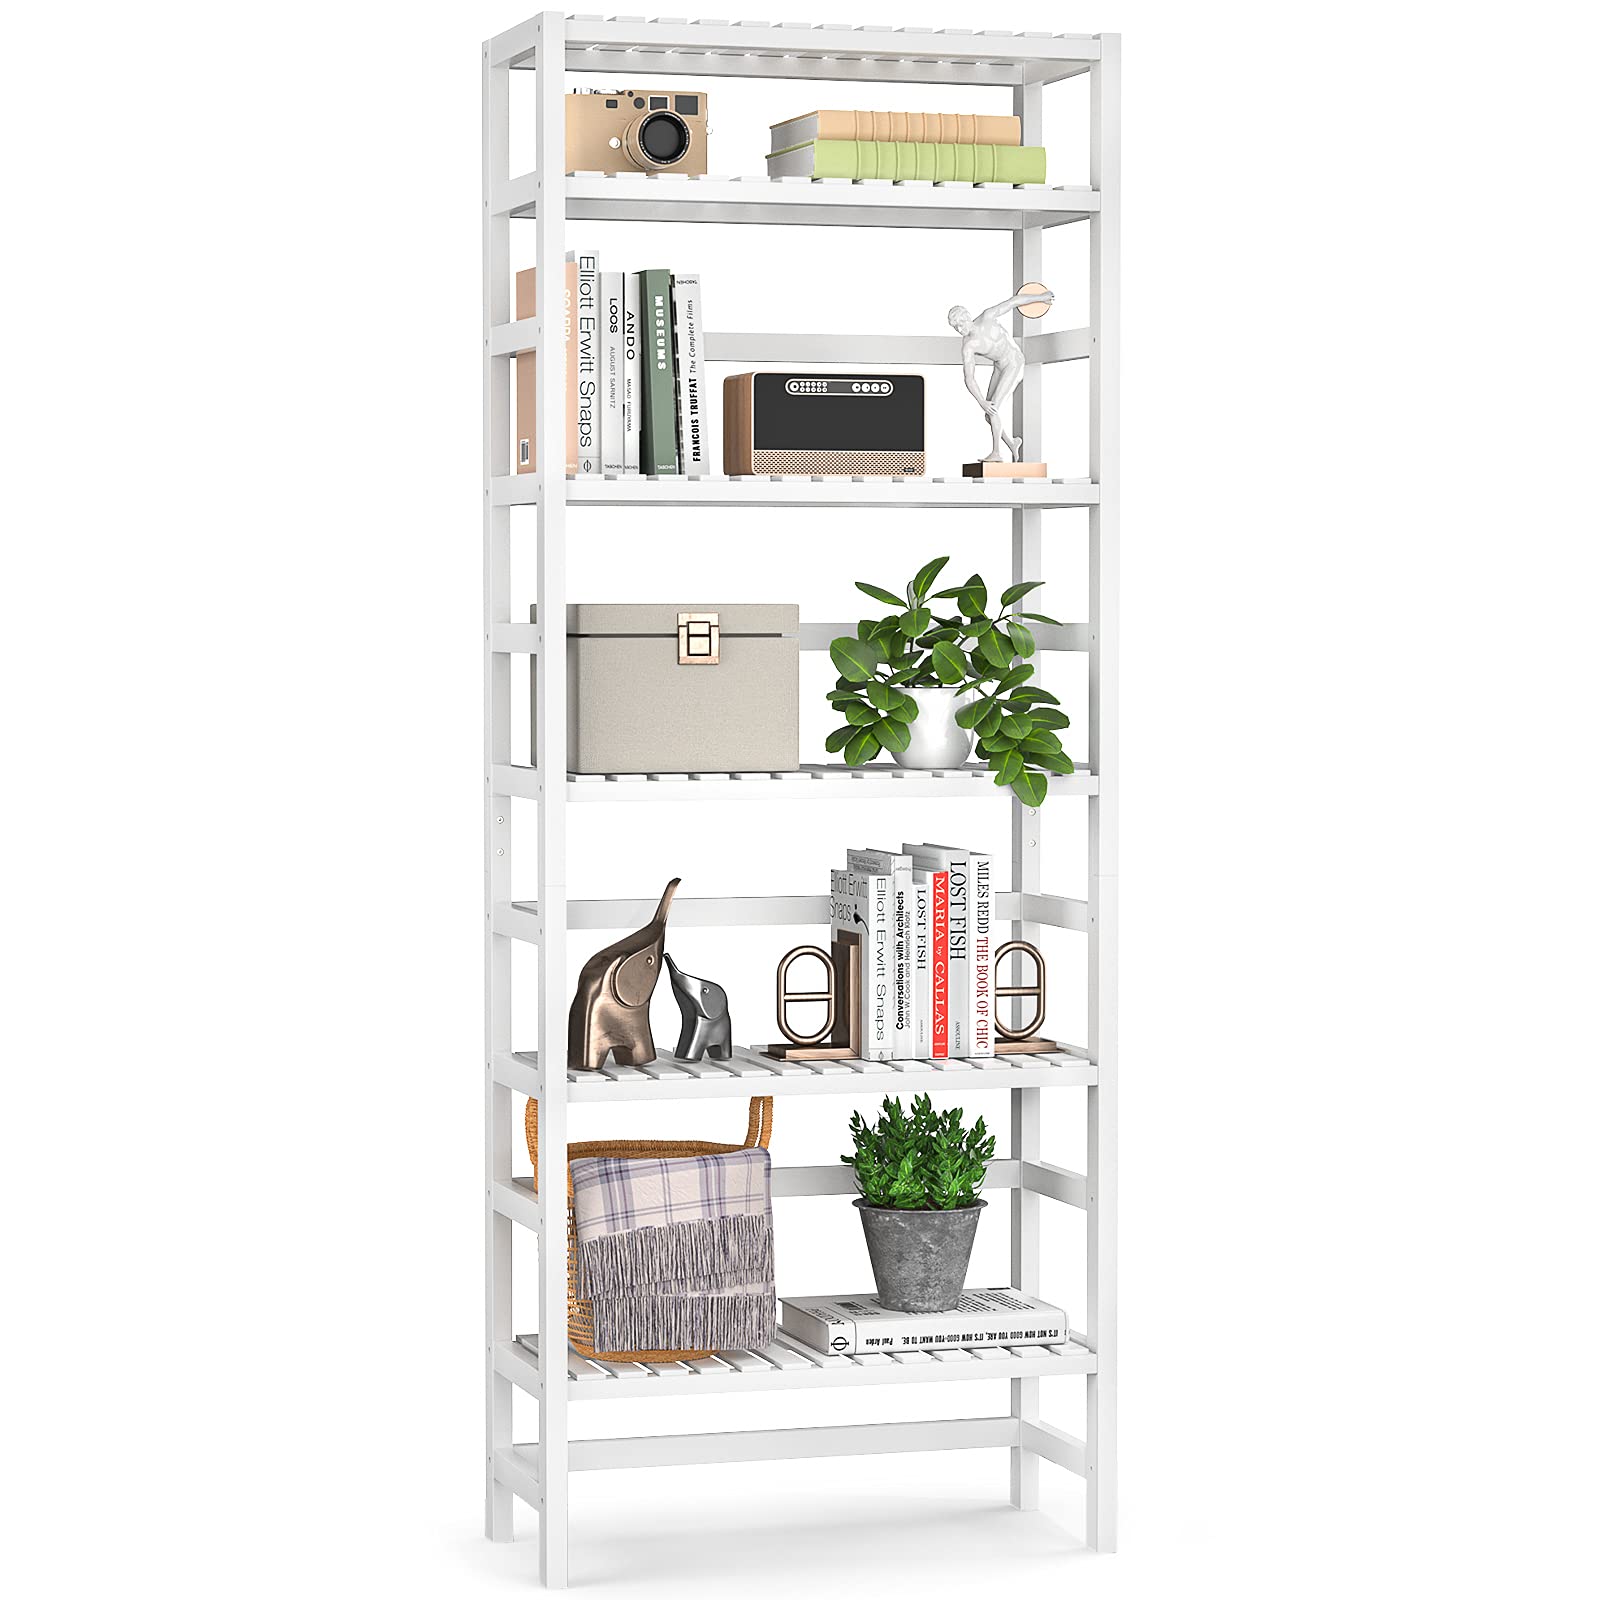 Librería alta ajustable de bambú de 6 niveles, organizador de estantes para libros, almacenamiento independiente